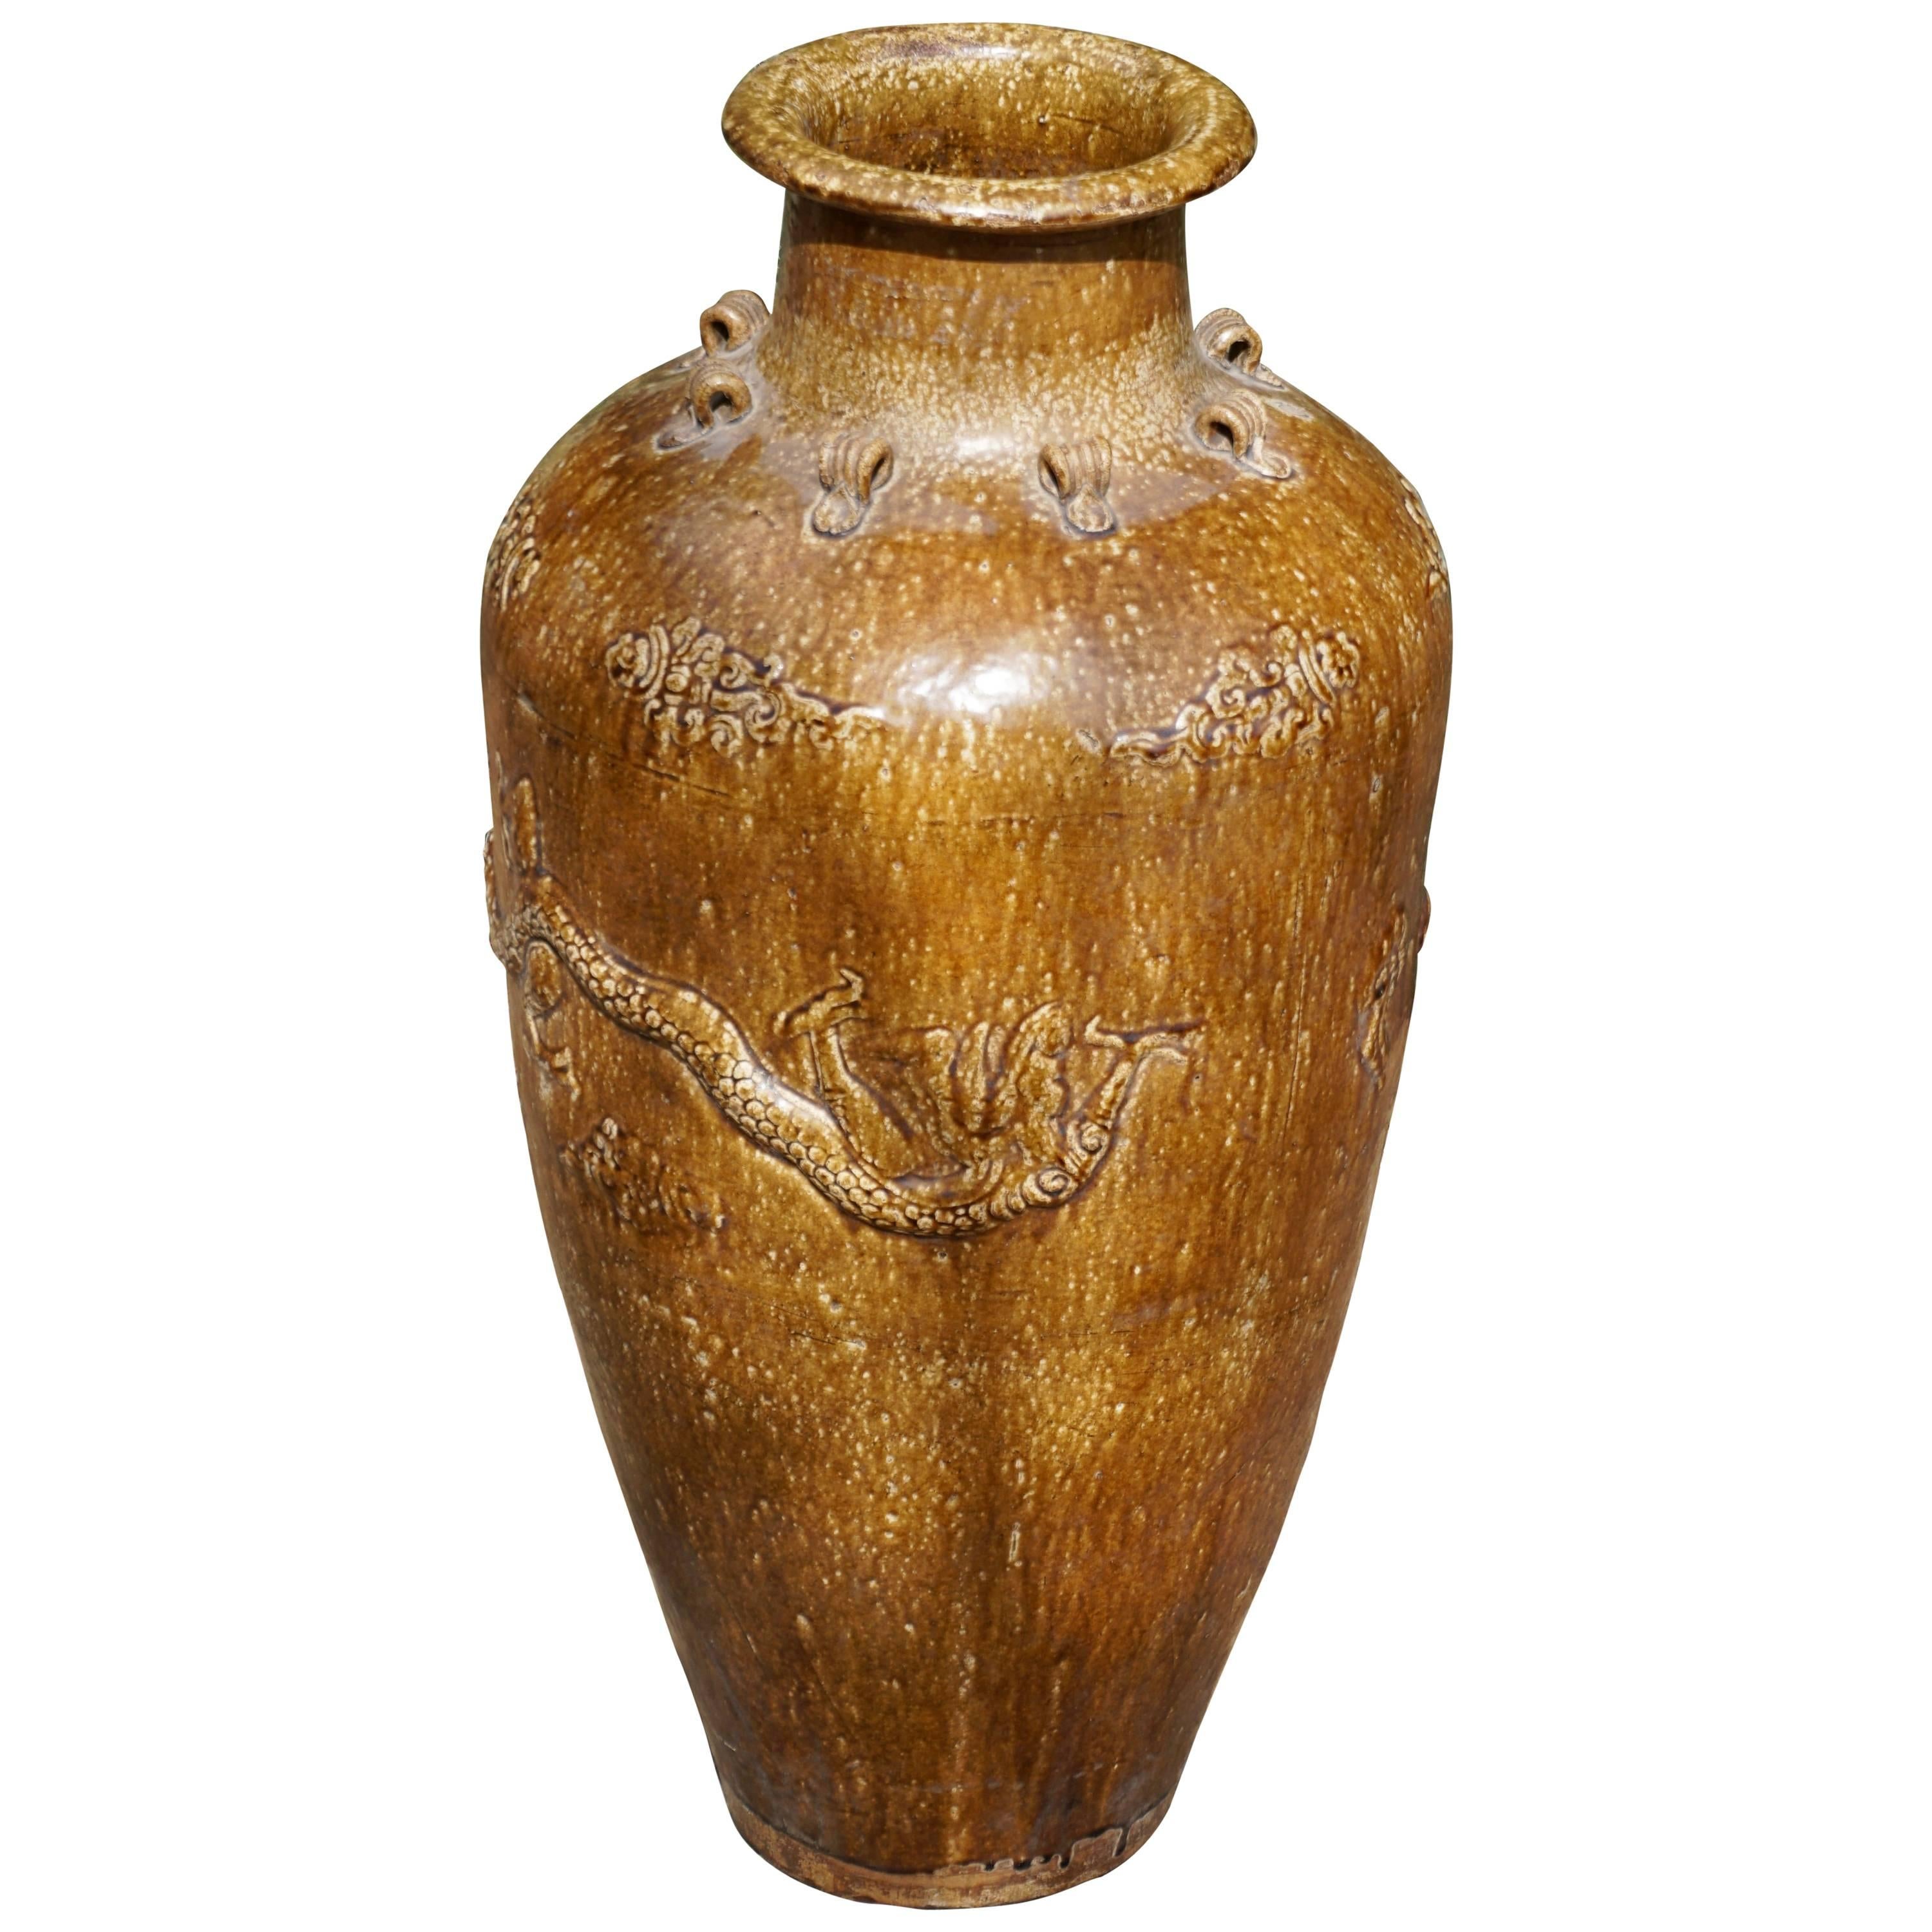 Grande vaso cinese di stoccaggio in gres della dinastia Ming con draghi